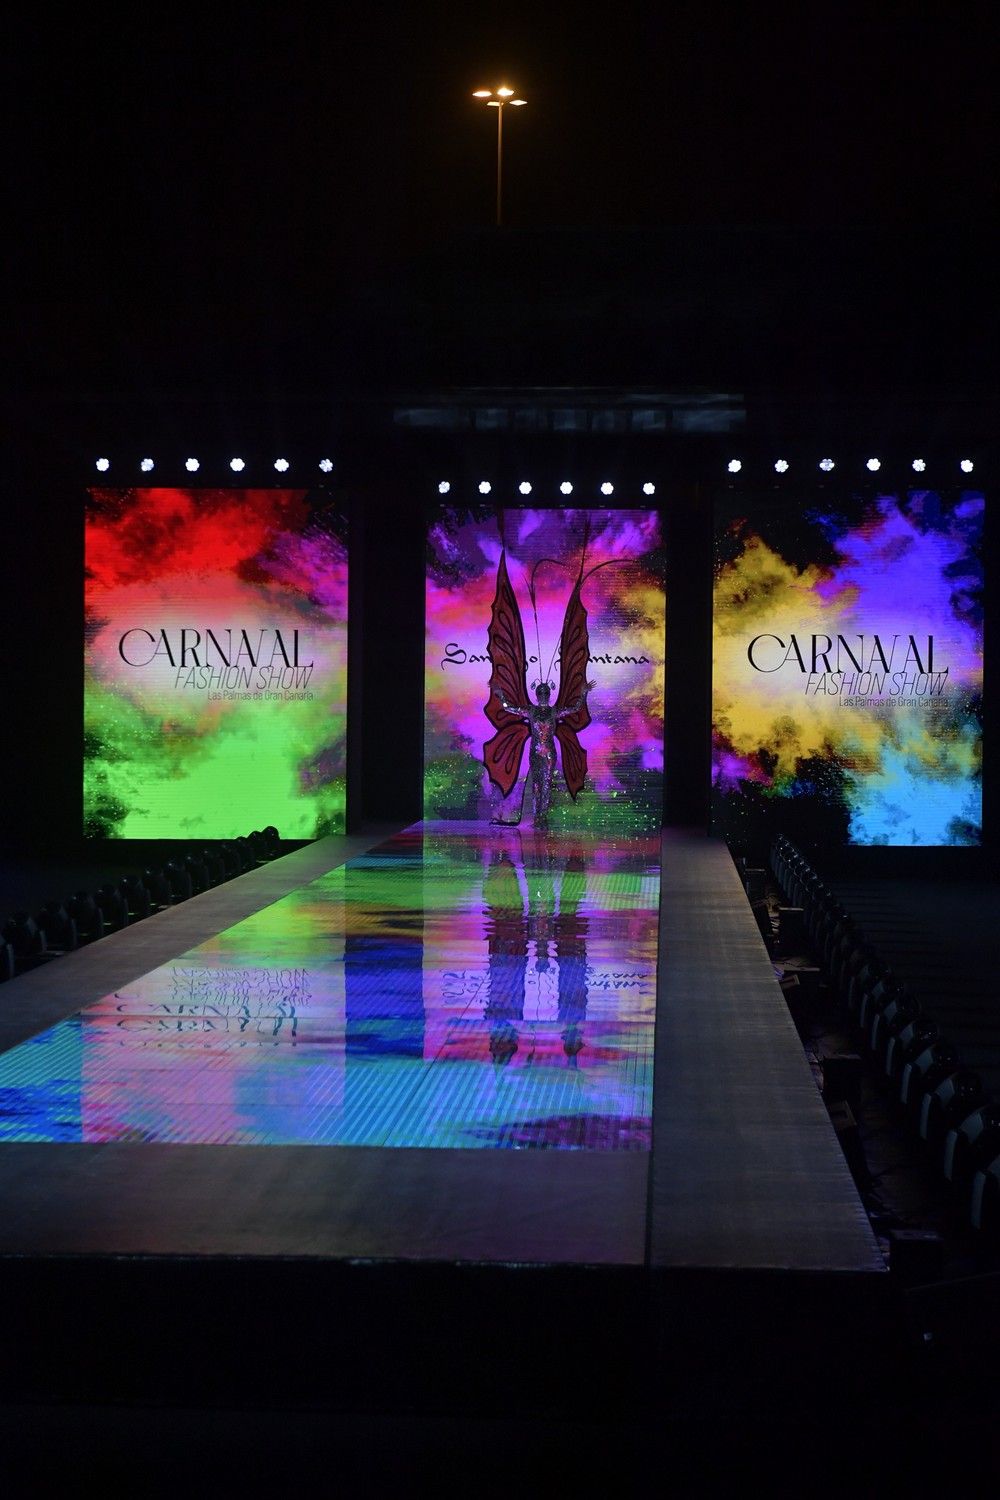 La pasarela «Carnaval Fashion Show» vuelve al parque Santa Catalina